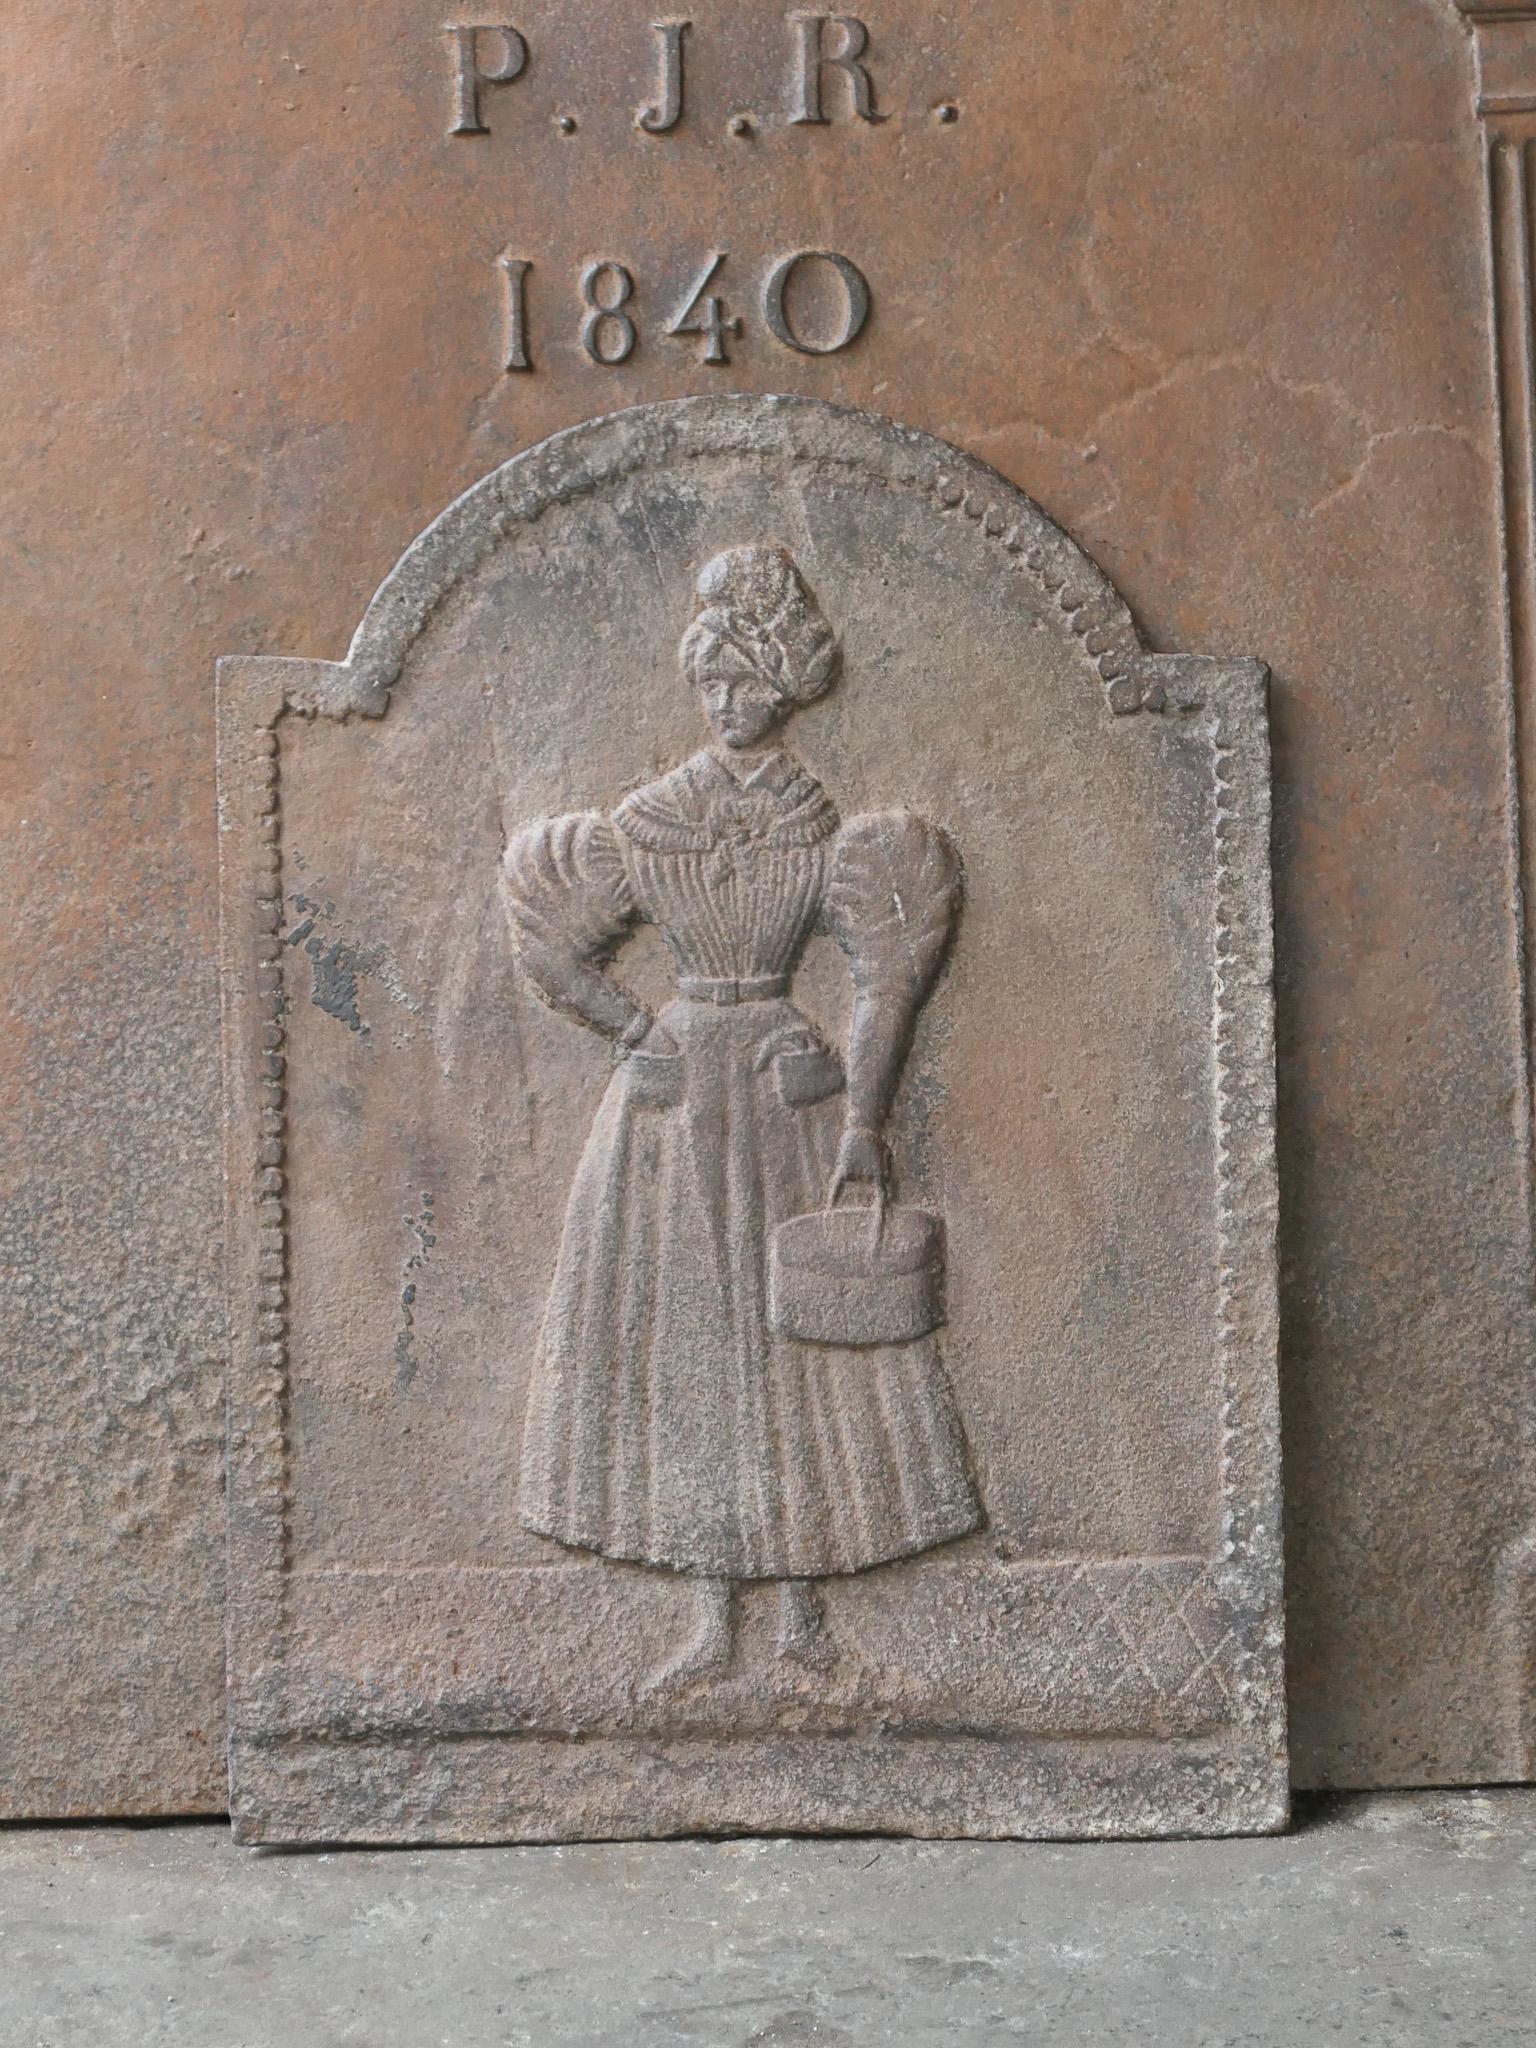 Plaque de cheminée française du XIXe siècle, d'époque Napoléon III, avec une dame.

La plaque de cheminée est en fonte et a une patine brune naturelle. Sur demande, il peut être réalisé en noir / étain. La plaque de cheminée est en bon état et ne